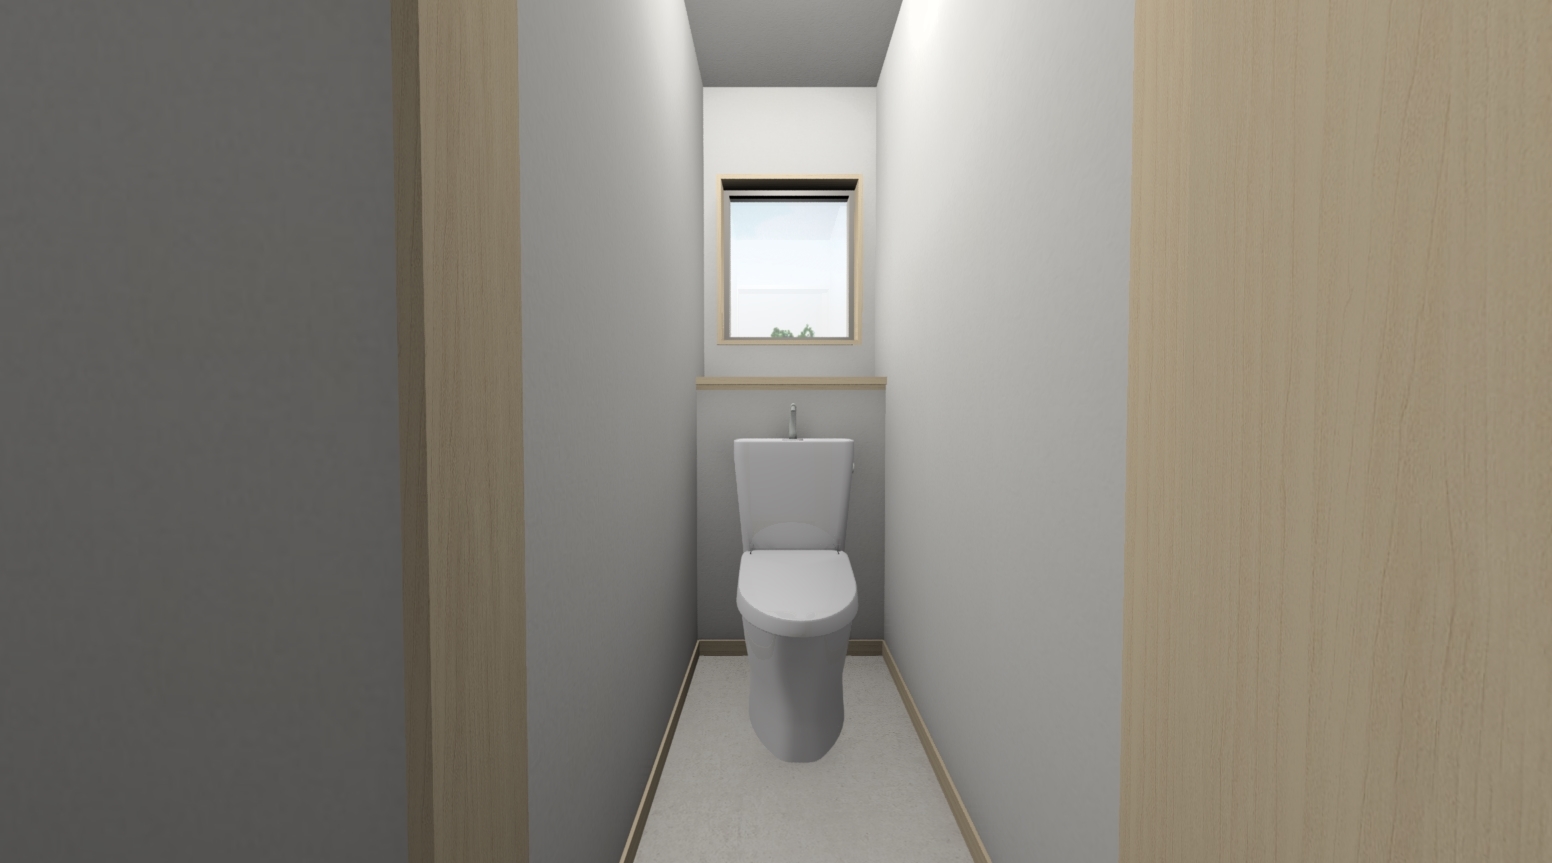 住宅の間取り 1畳サイズのトイレのデザインを考える 窓の位置と壁の色で印象は変わる イエ家いえ